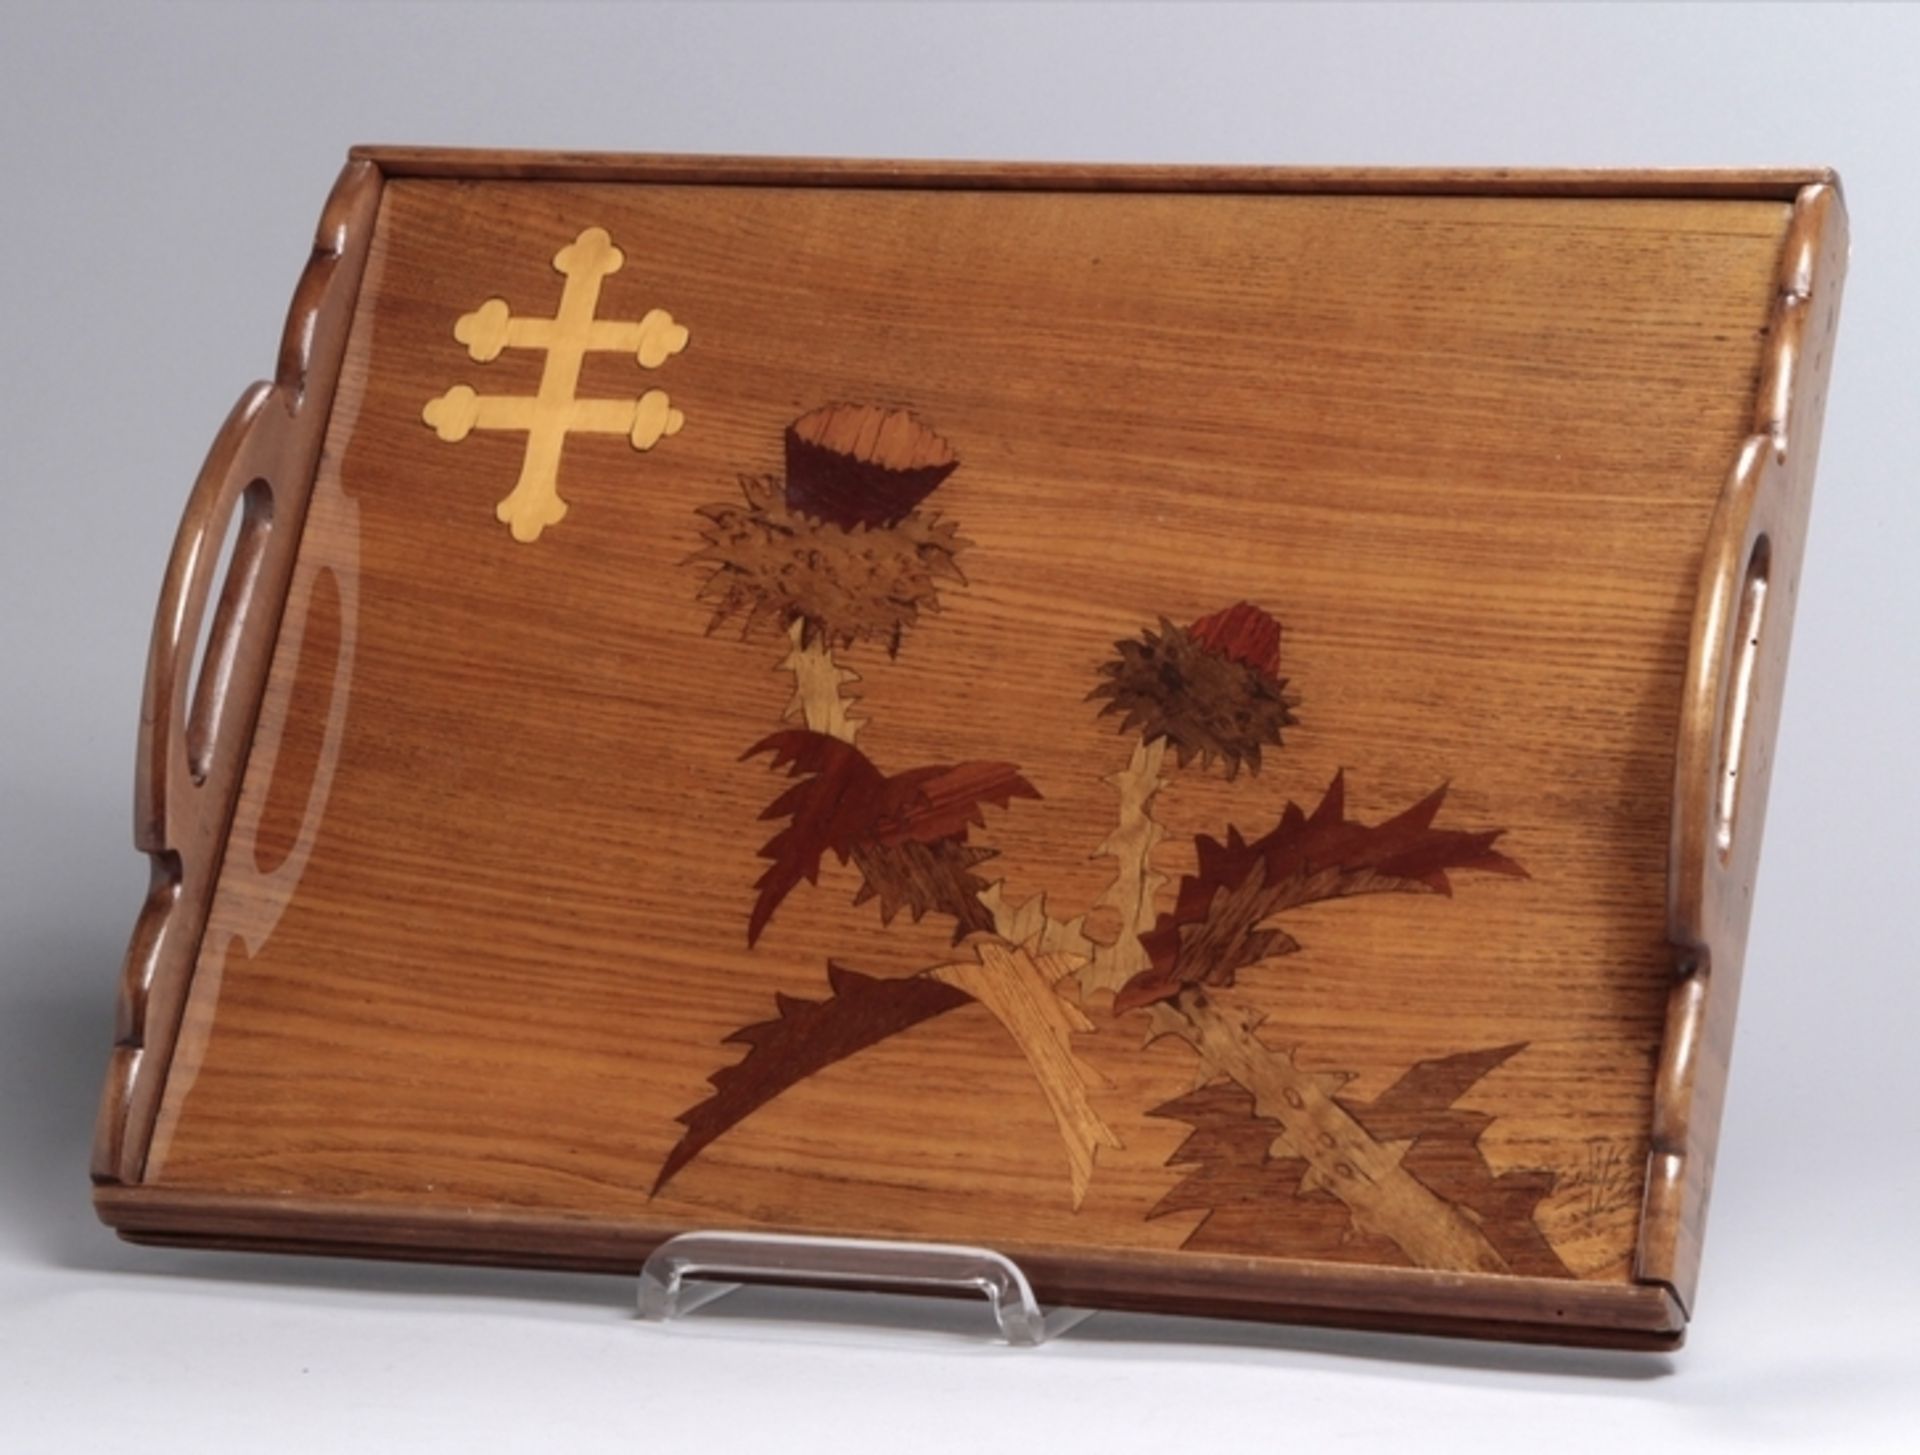 Holz-Tablett, Emile Gallé, Nancy, um 1900, gefertigt und intarsiert aus verschiedenenEdelhölzer